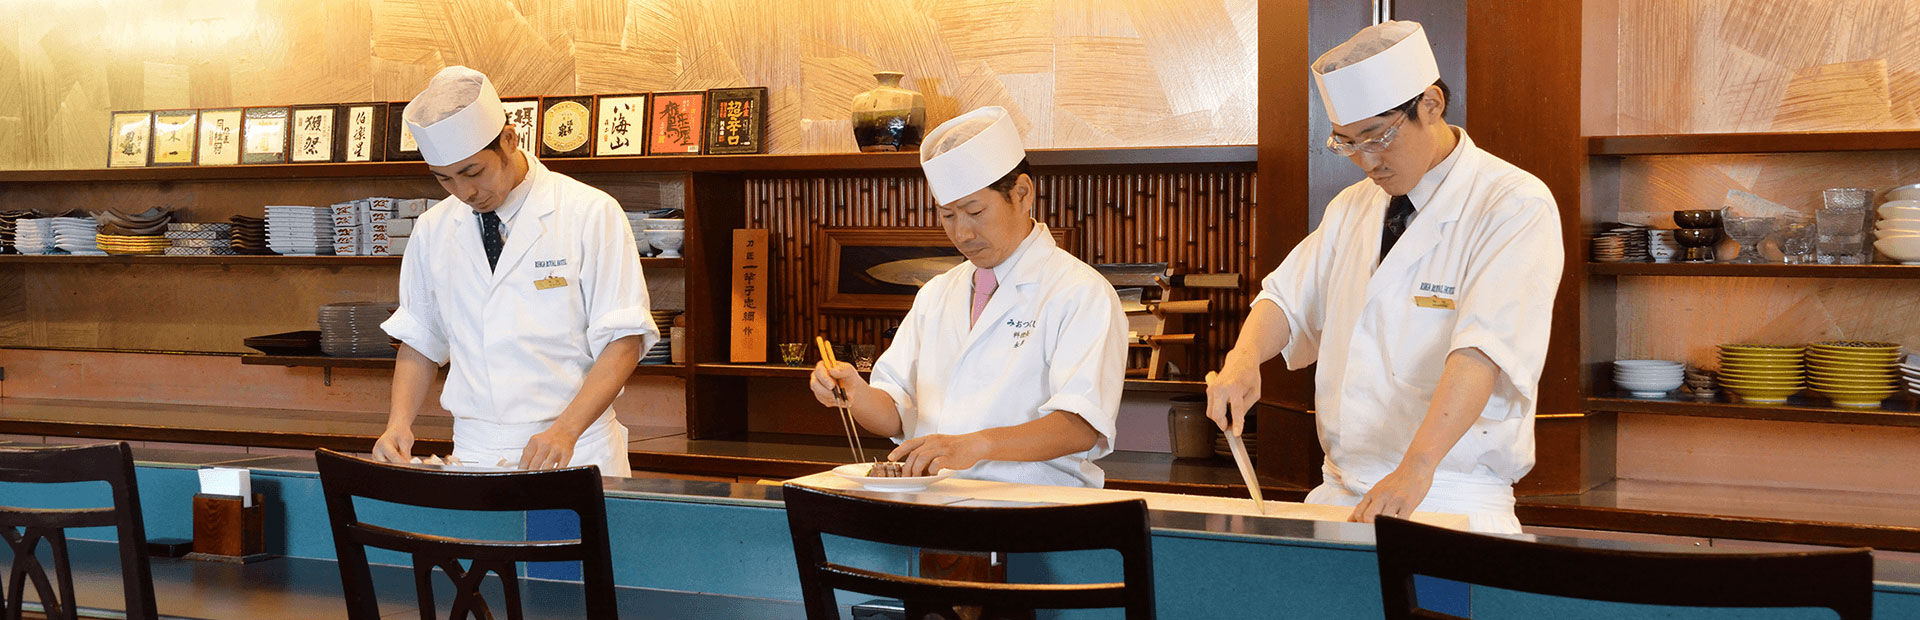 カウンター割烹 みおつくし レストラン バー一覧 レストラン バー リーガロイヤルホテル 大阪